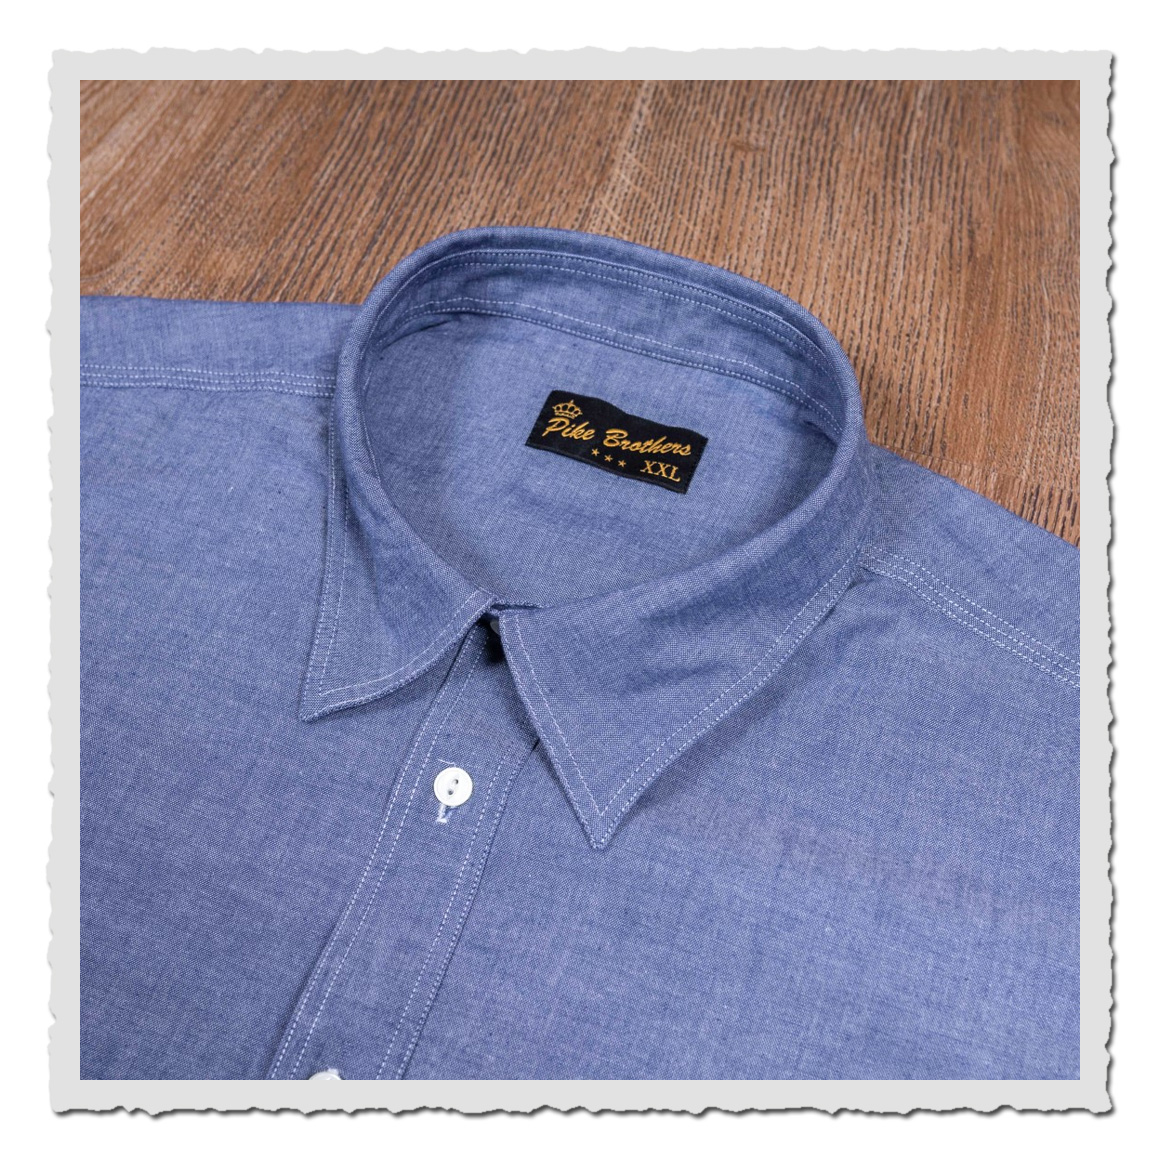 1937 Roamer Shirt Short sleeve blue chambrey